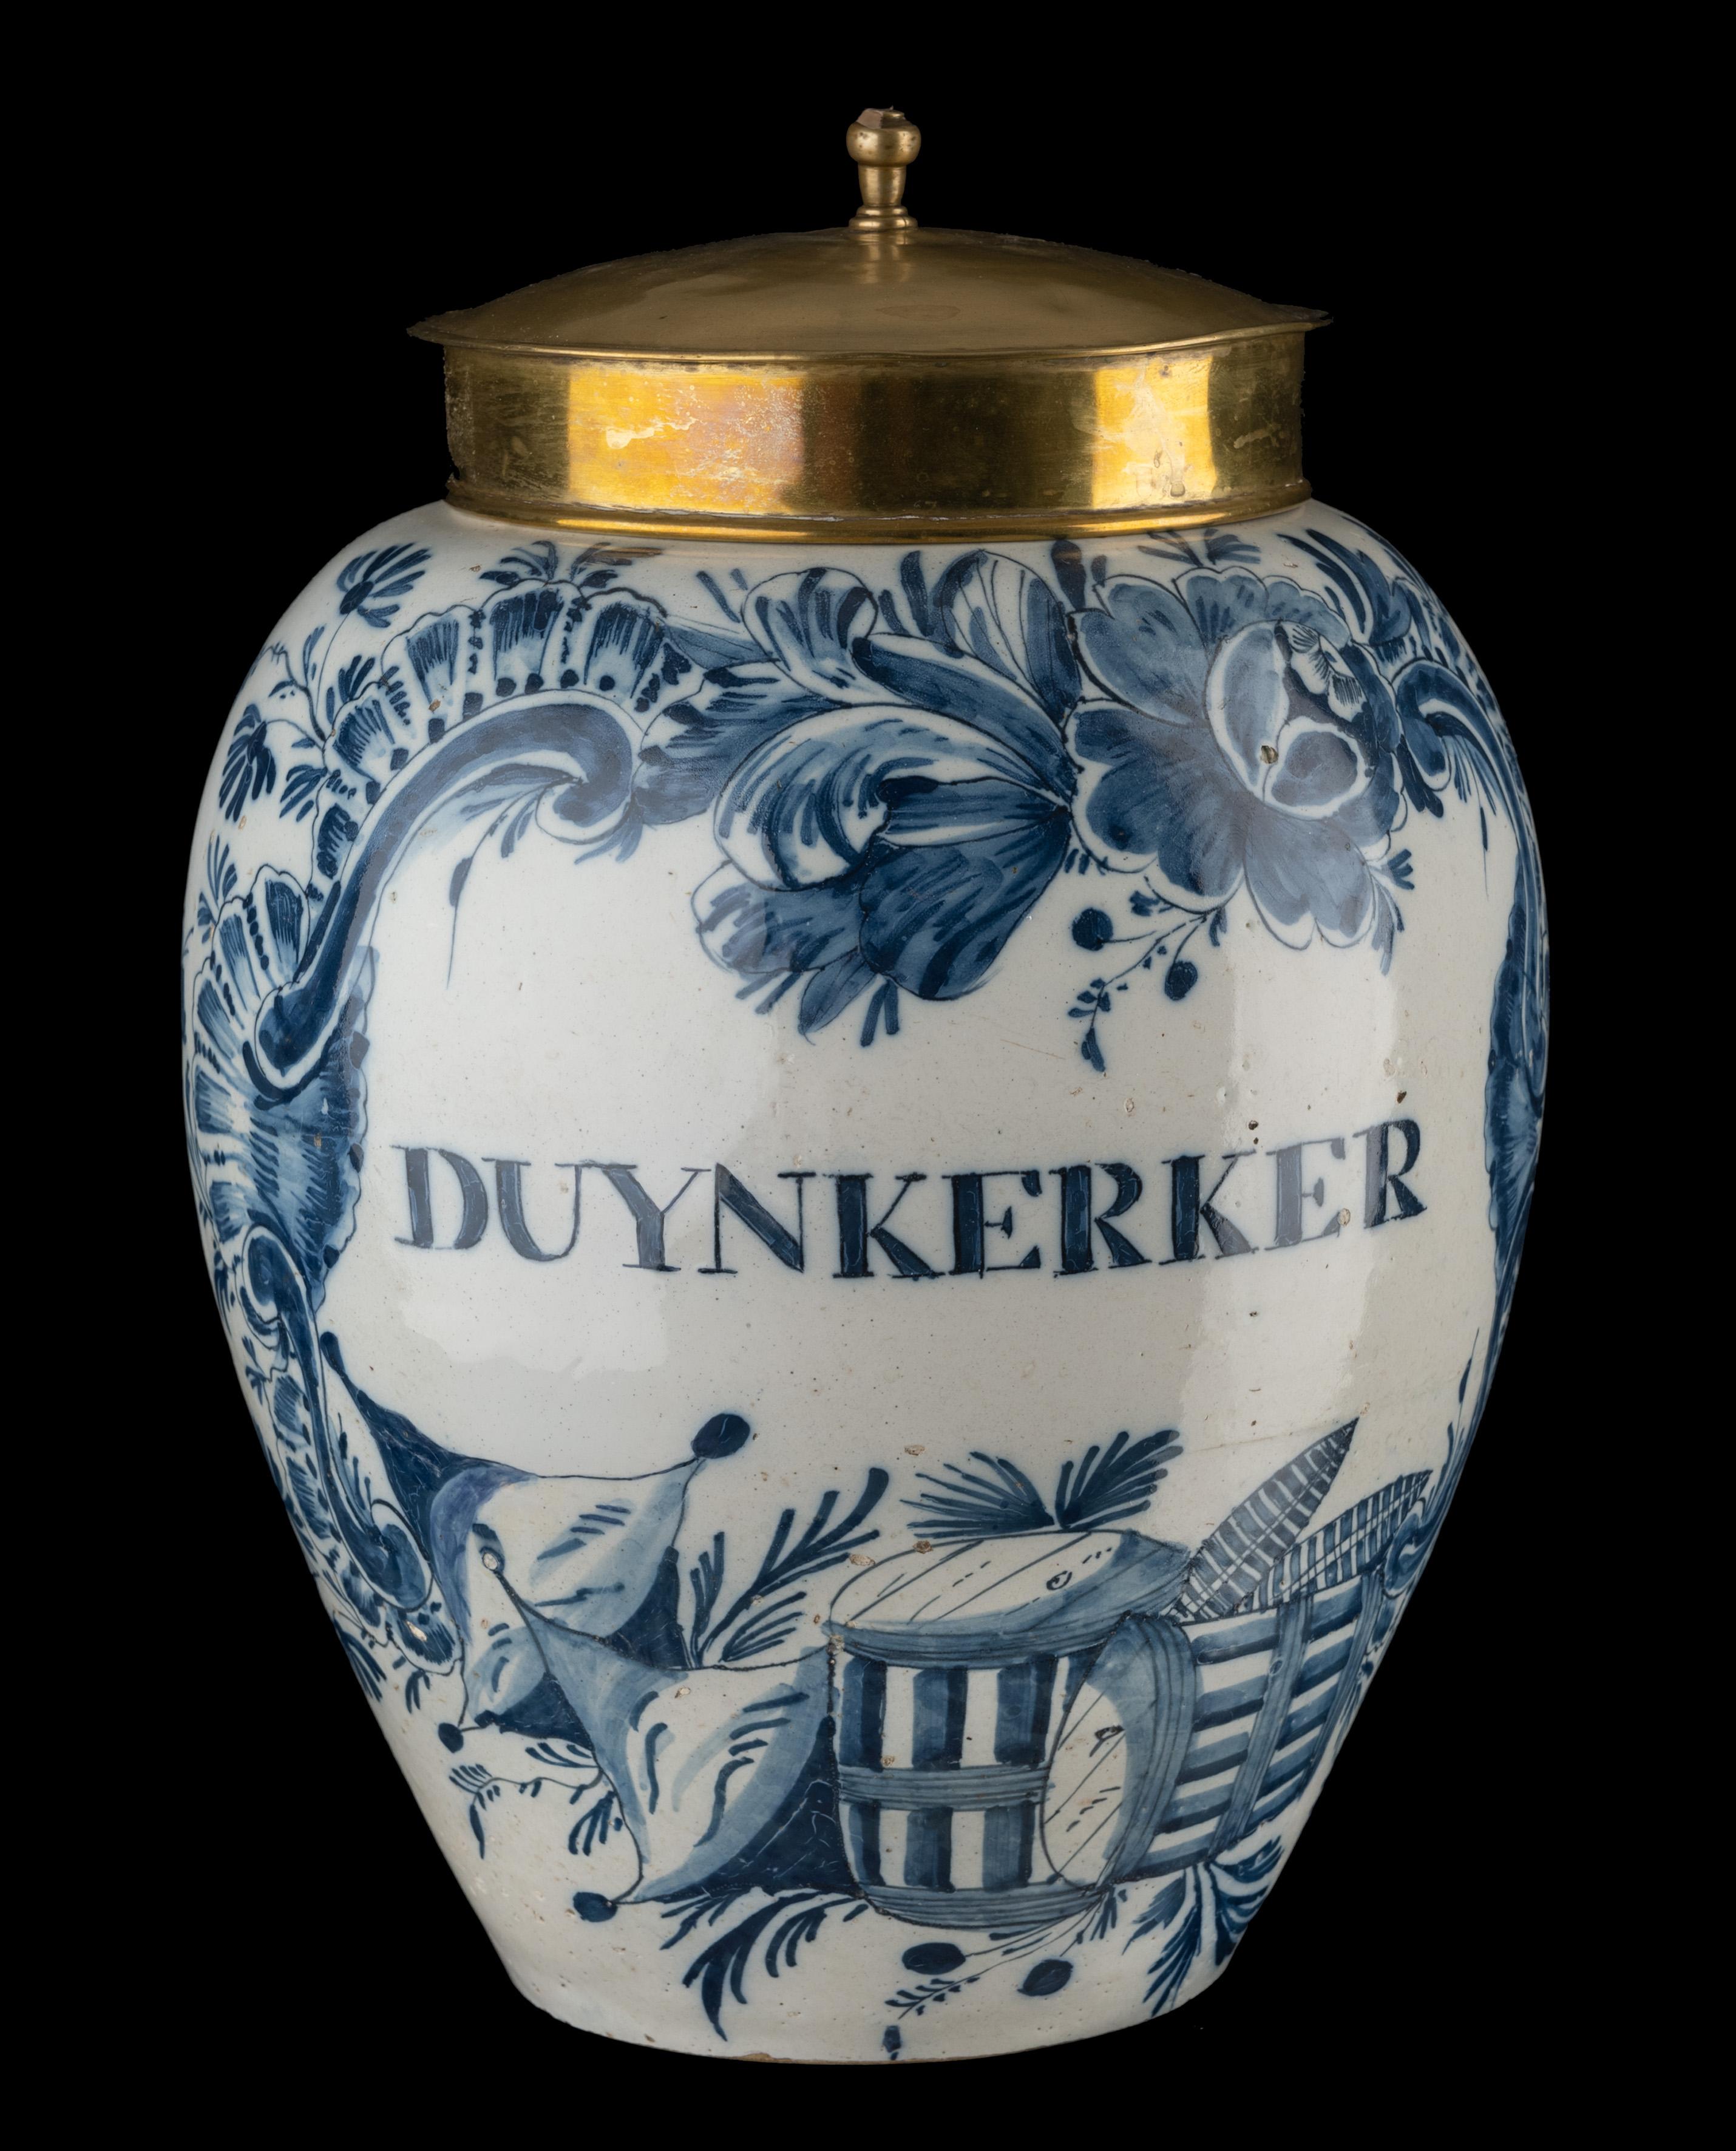 Pot à tabac DUYNKERKER bleu et blanc
Delft, 1760-1780

Le pot à tabac ovoïde avec couvercle en cuivre présente une rainure sur l'épaule au sommet et un bord en saillie. La jarre est peinte en bleu avec un cartouche contenant l'inscription